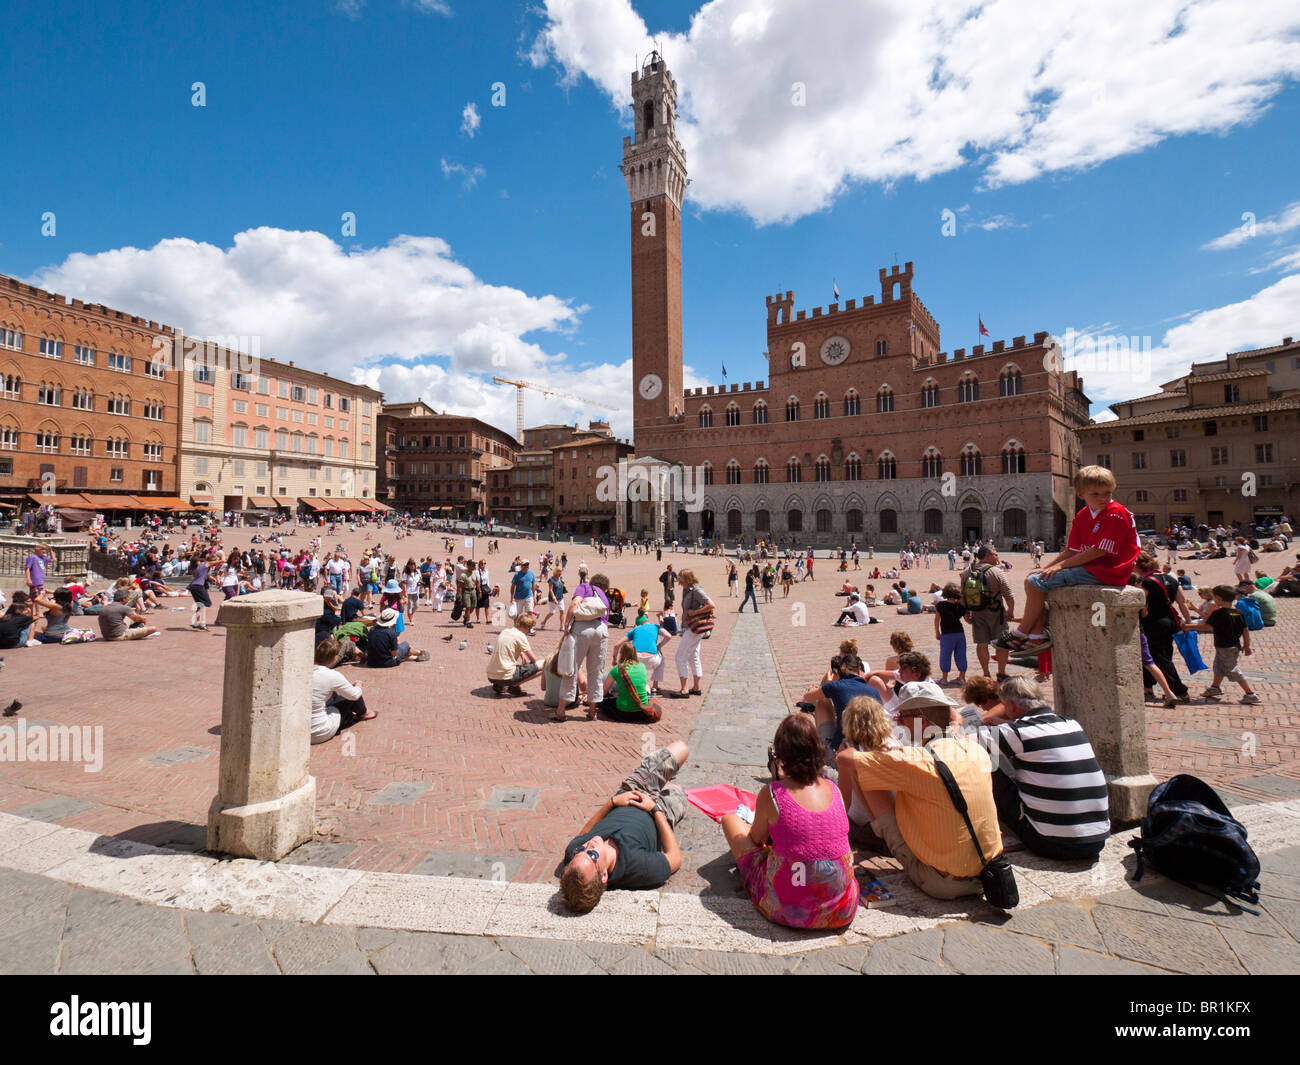 Les touristes visitent "Il Campo", la place centrale de la vieille ville de Sienne en Toscane, Italie. Banque D'Images